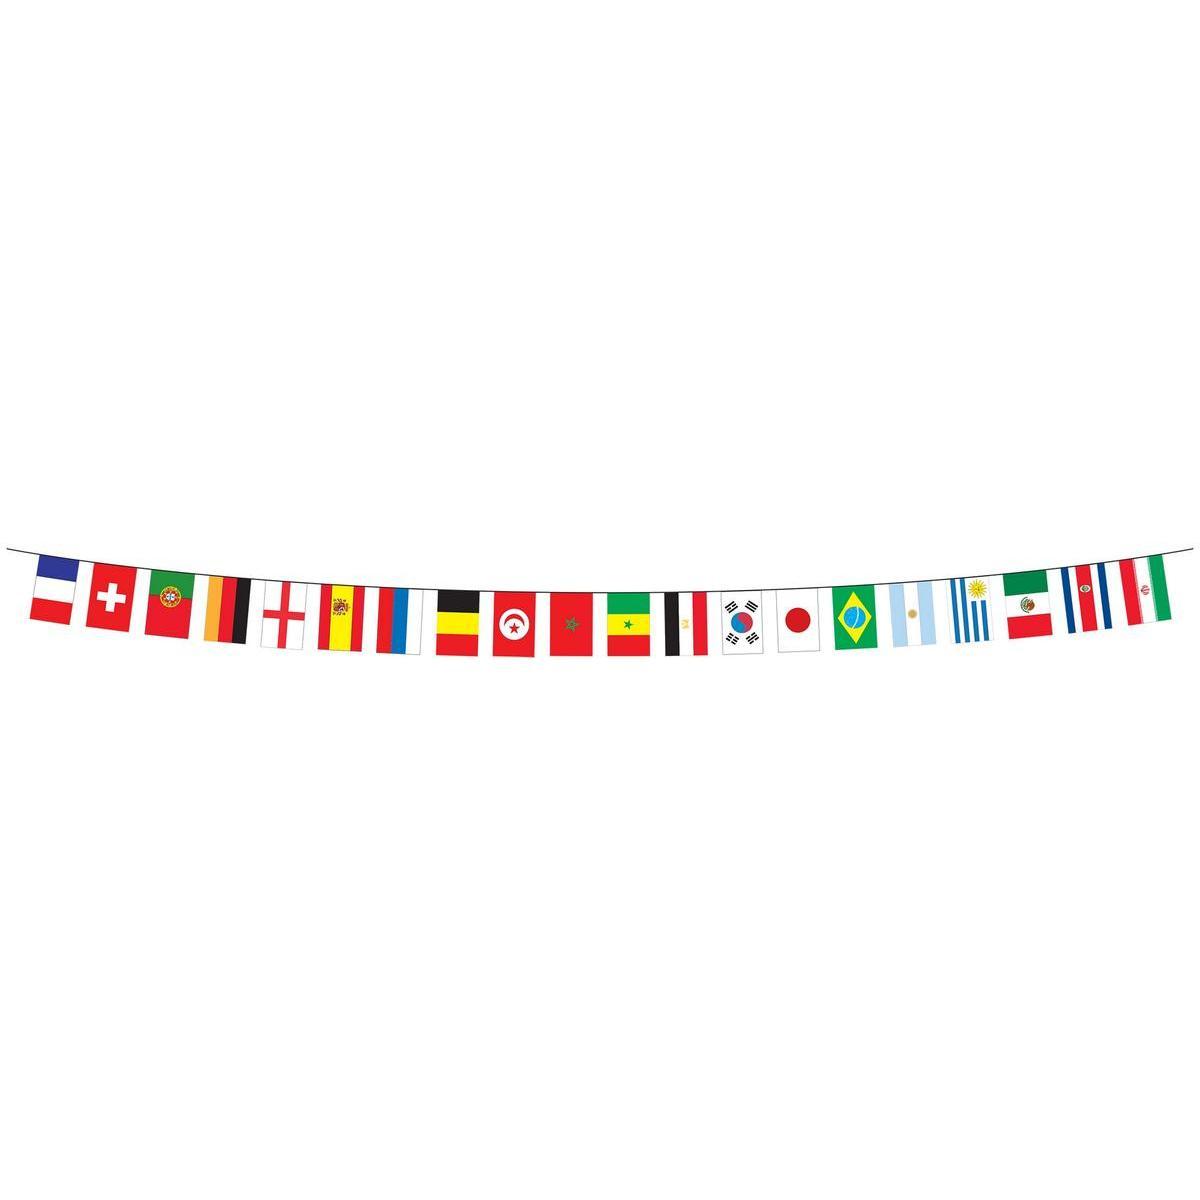 Guirlande de drapeaux multi pays - Plastique - 5 m x 30 cm x h 20 cm - Multicolore